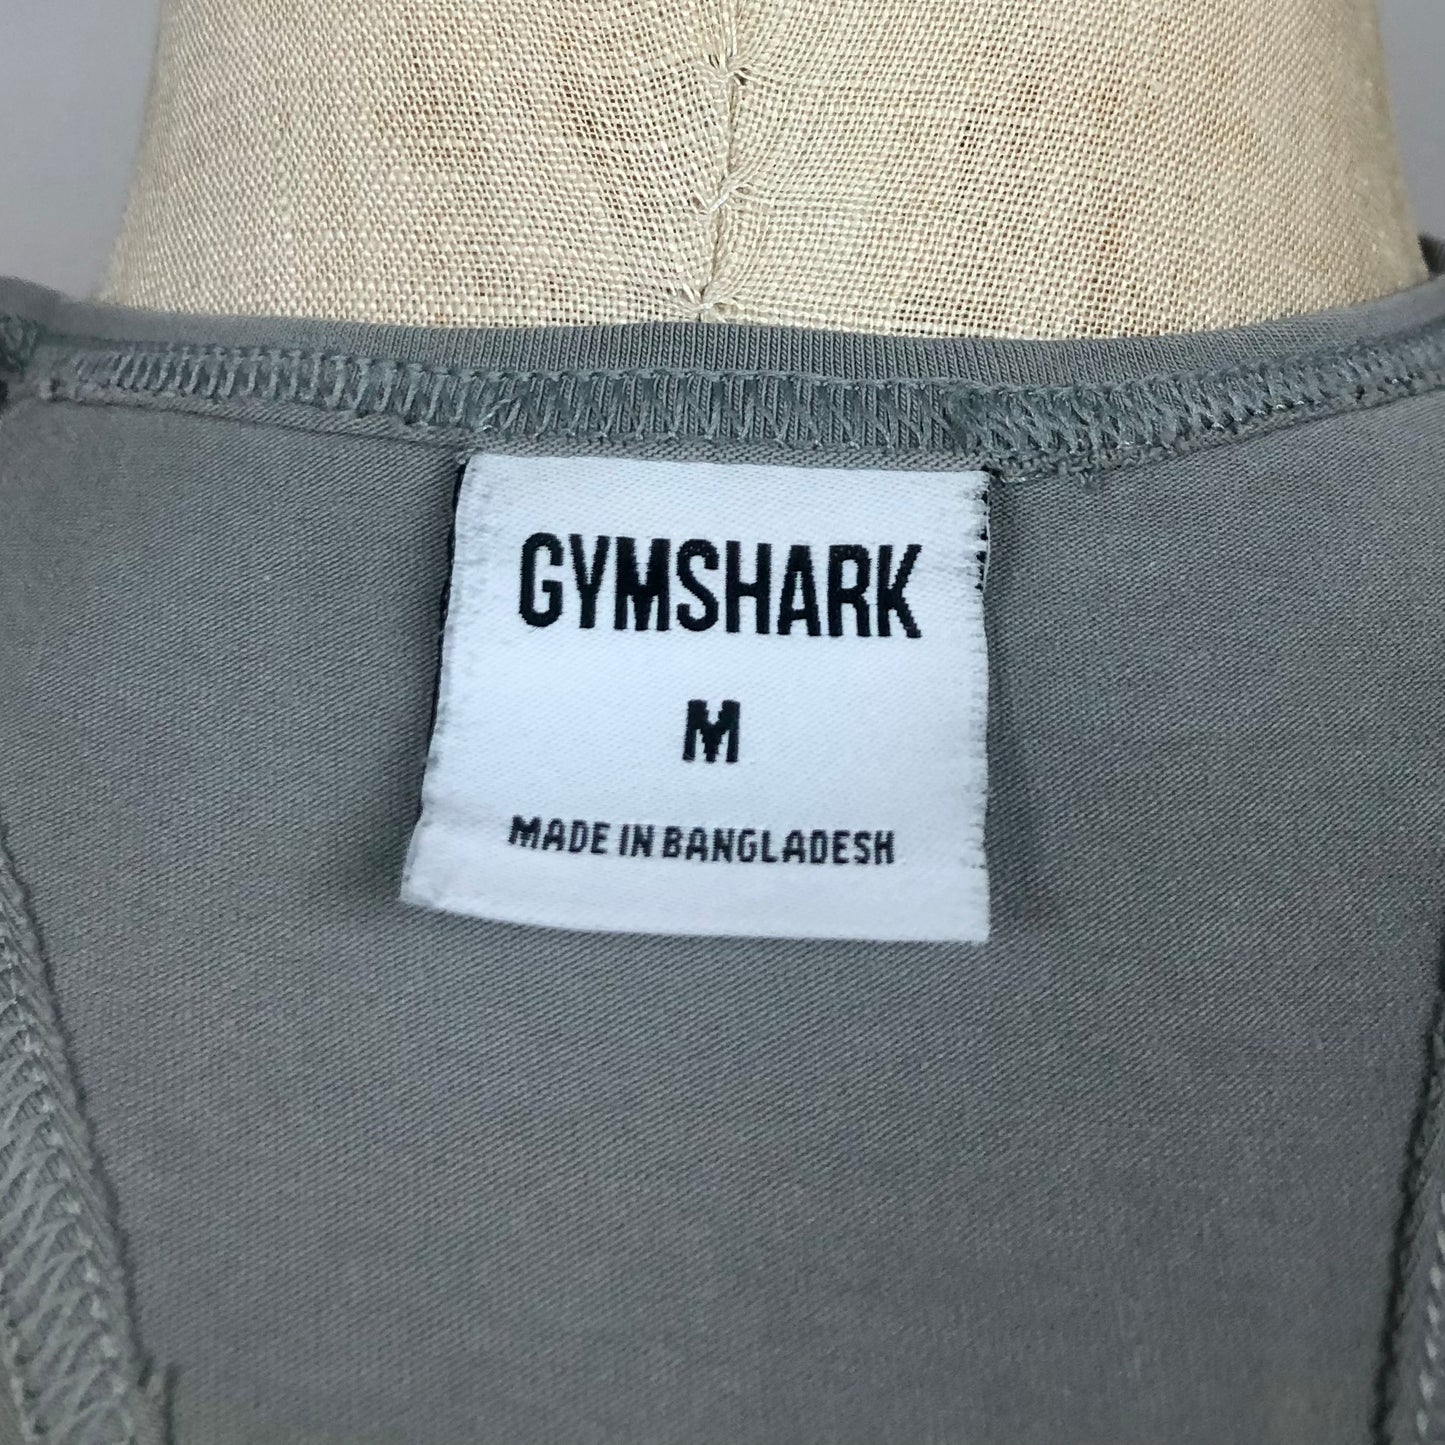 Camiseta de entrenamiento sin mangas Gymshark 🏋🏽 color gris y logo en negro Talla M